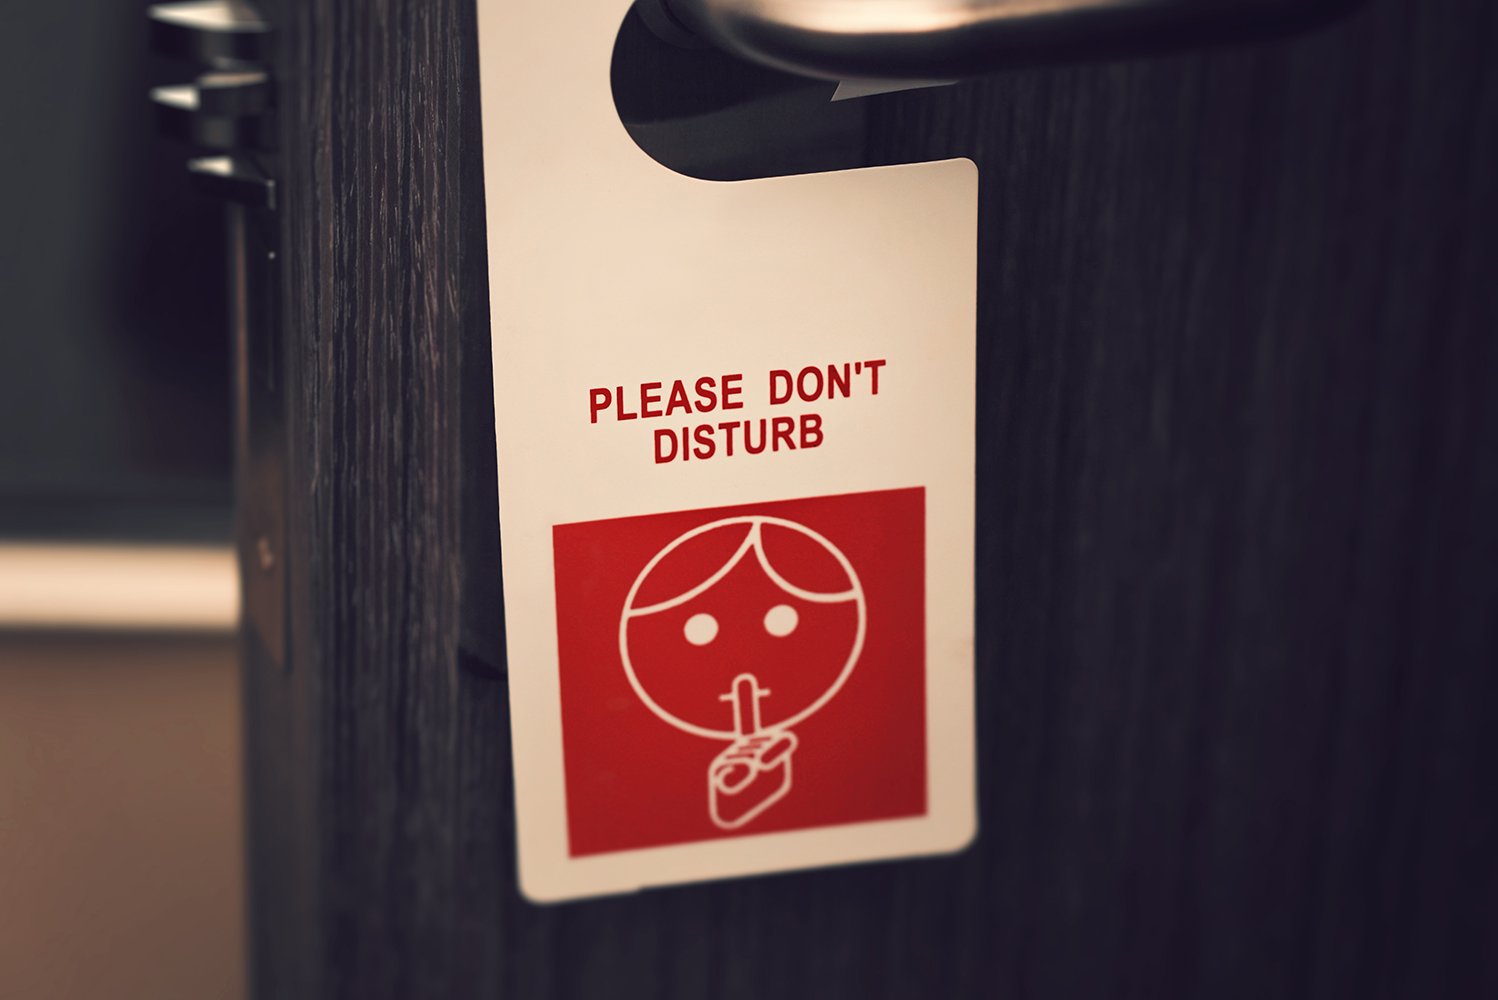 Do Not Disturb sign on hotel room door